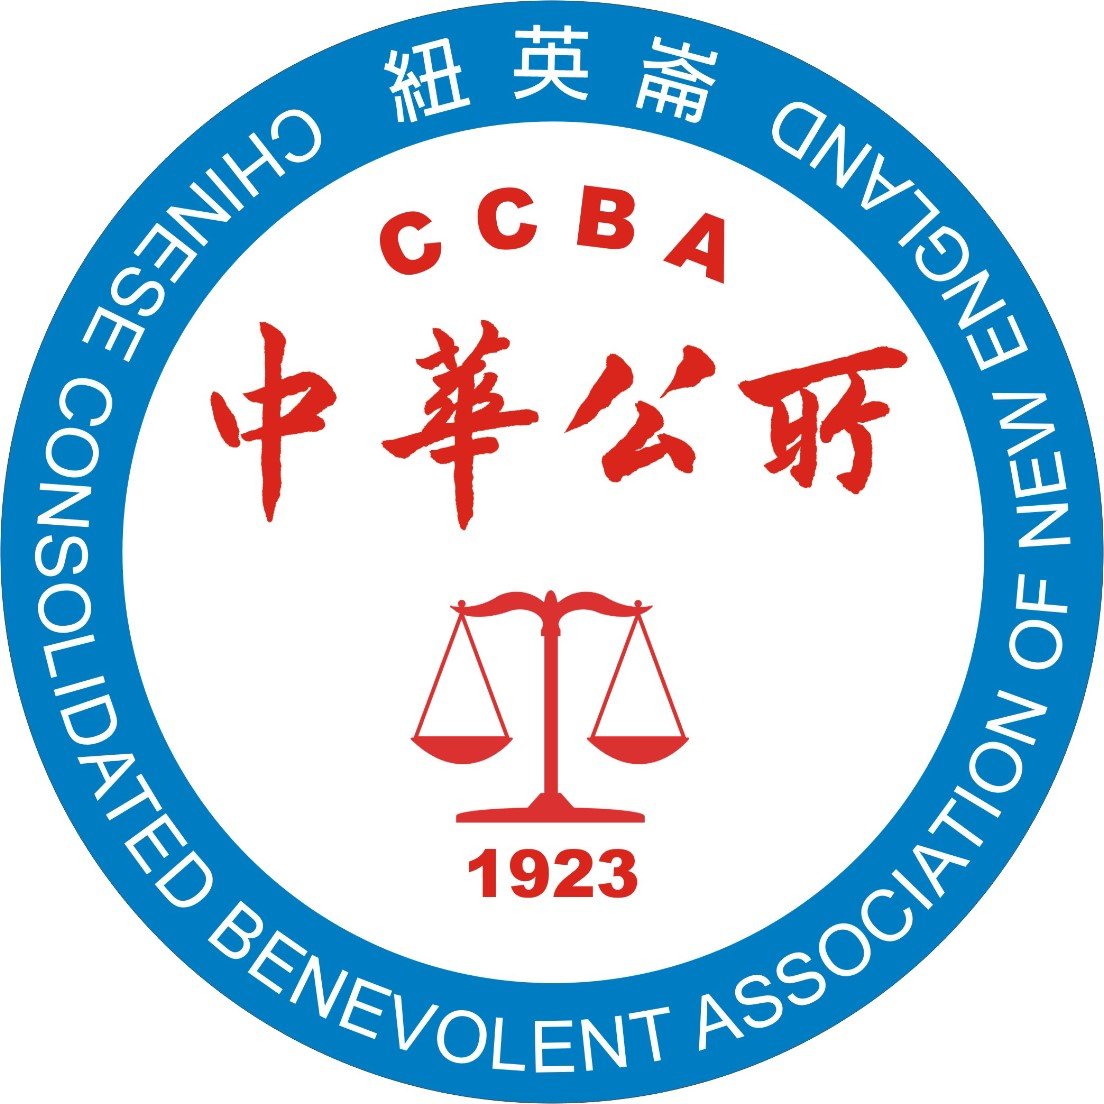 CCBA RWB Logo.jpg